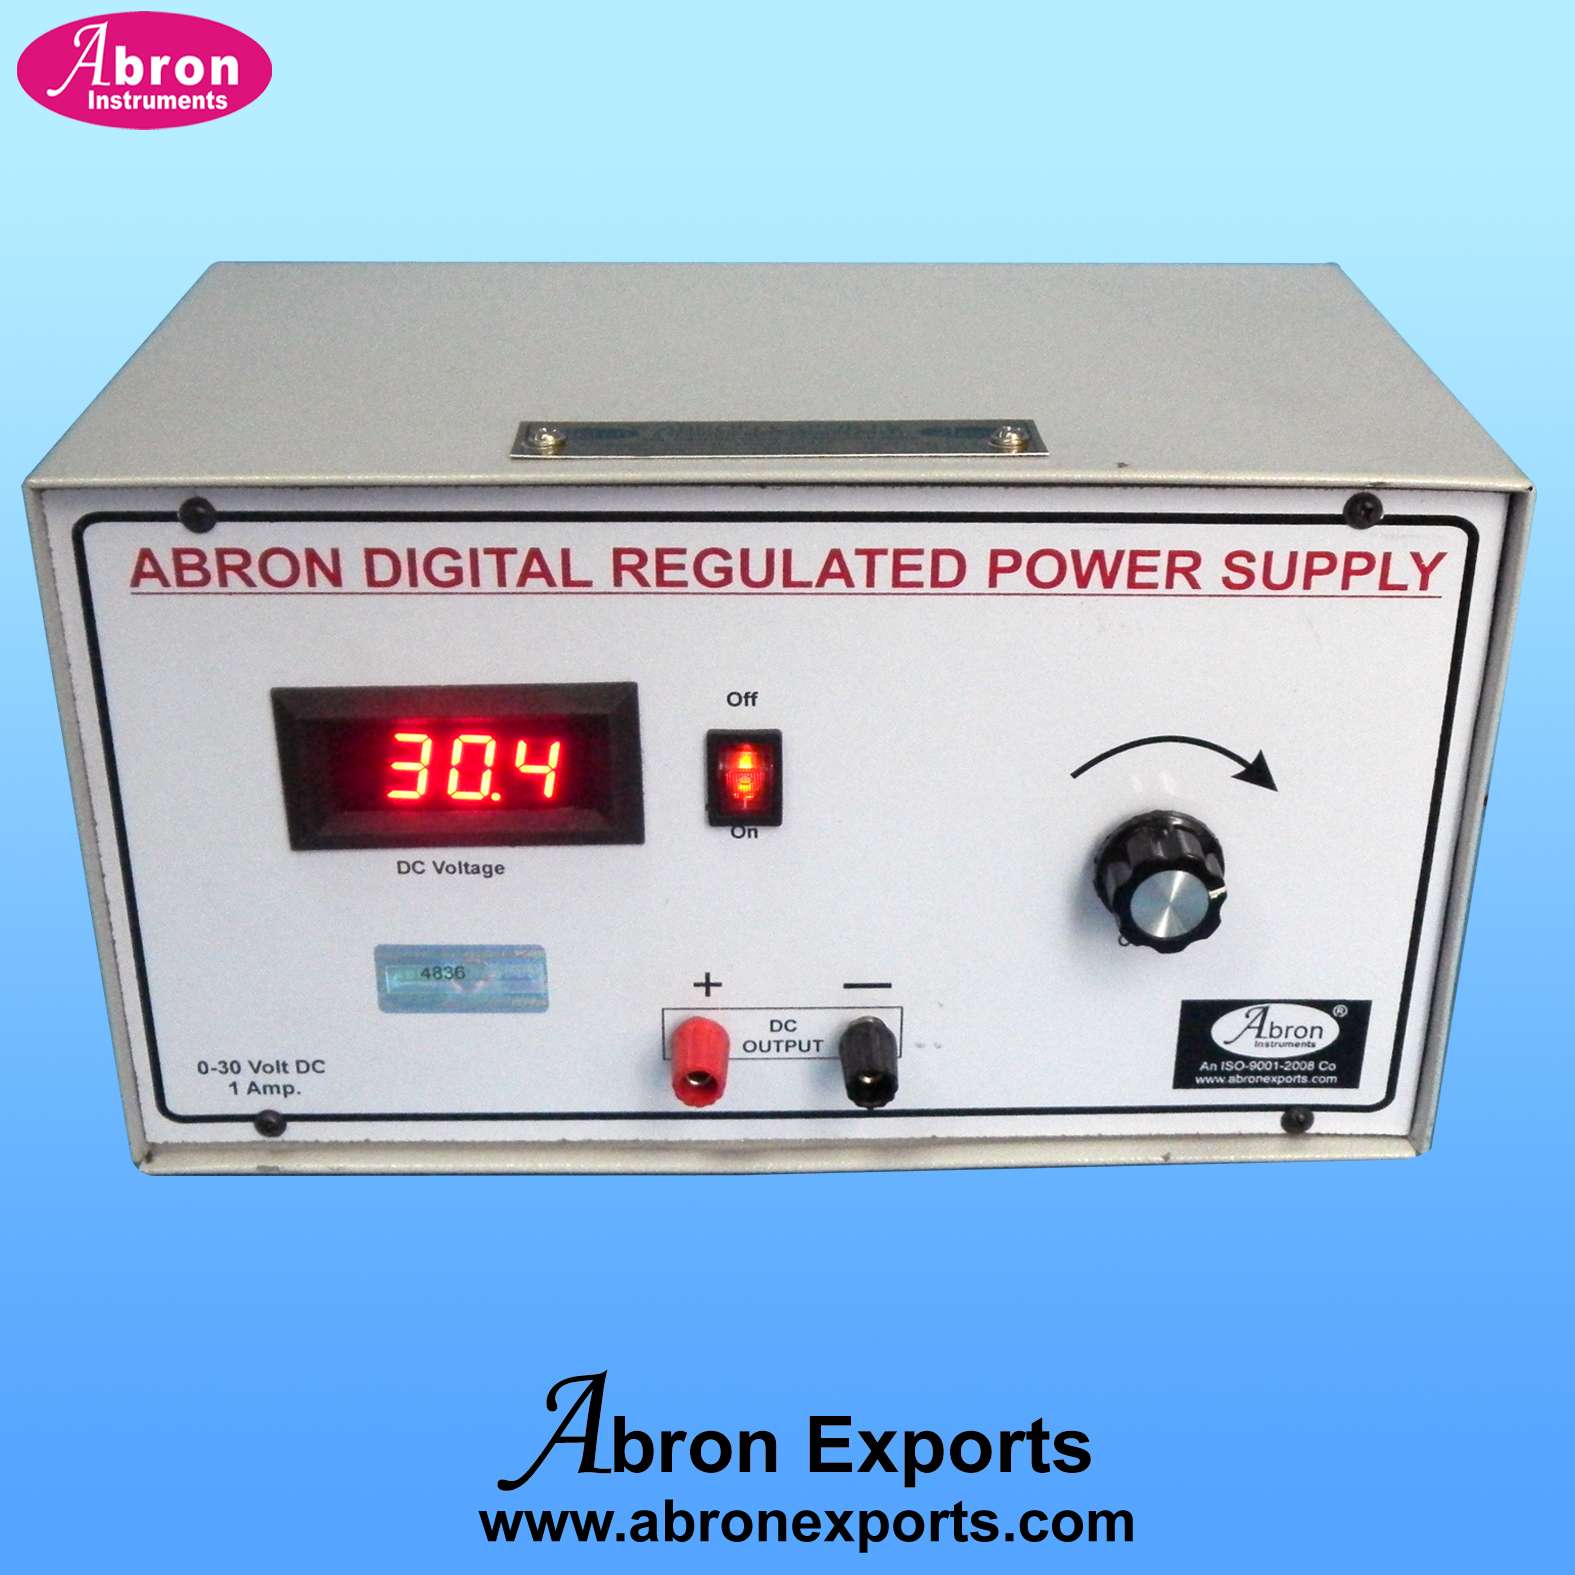 Power Supply Stabilized 1 Digital LED meter Range 0-30 VDC 1 Amp Variable  AE-1377DA301			Short circuit protection AE-1377DA301